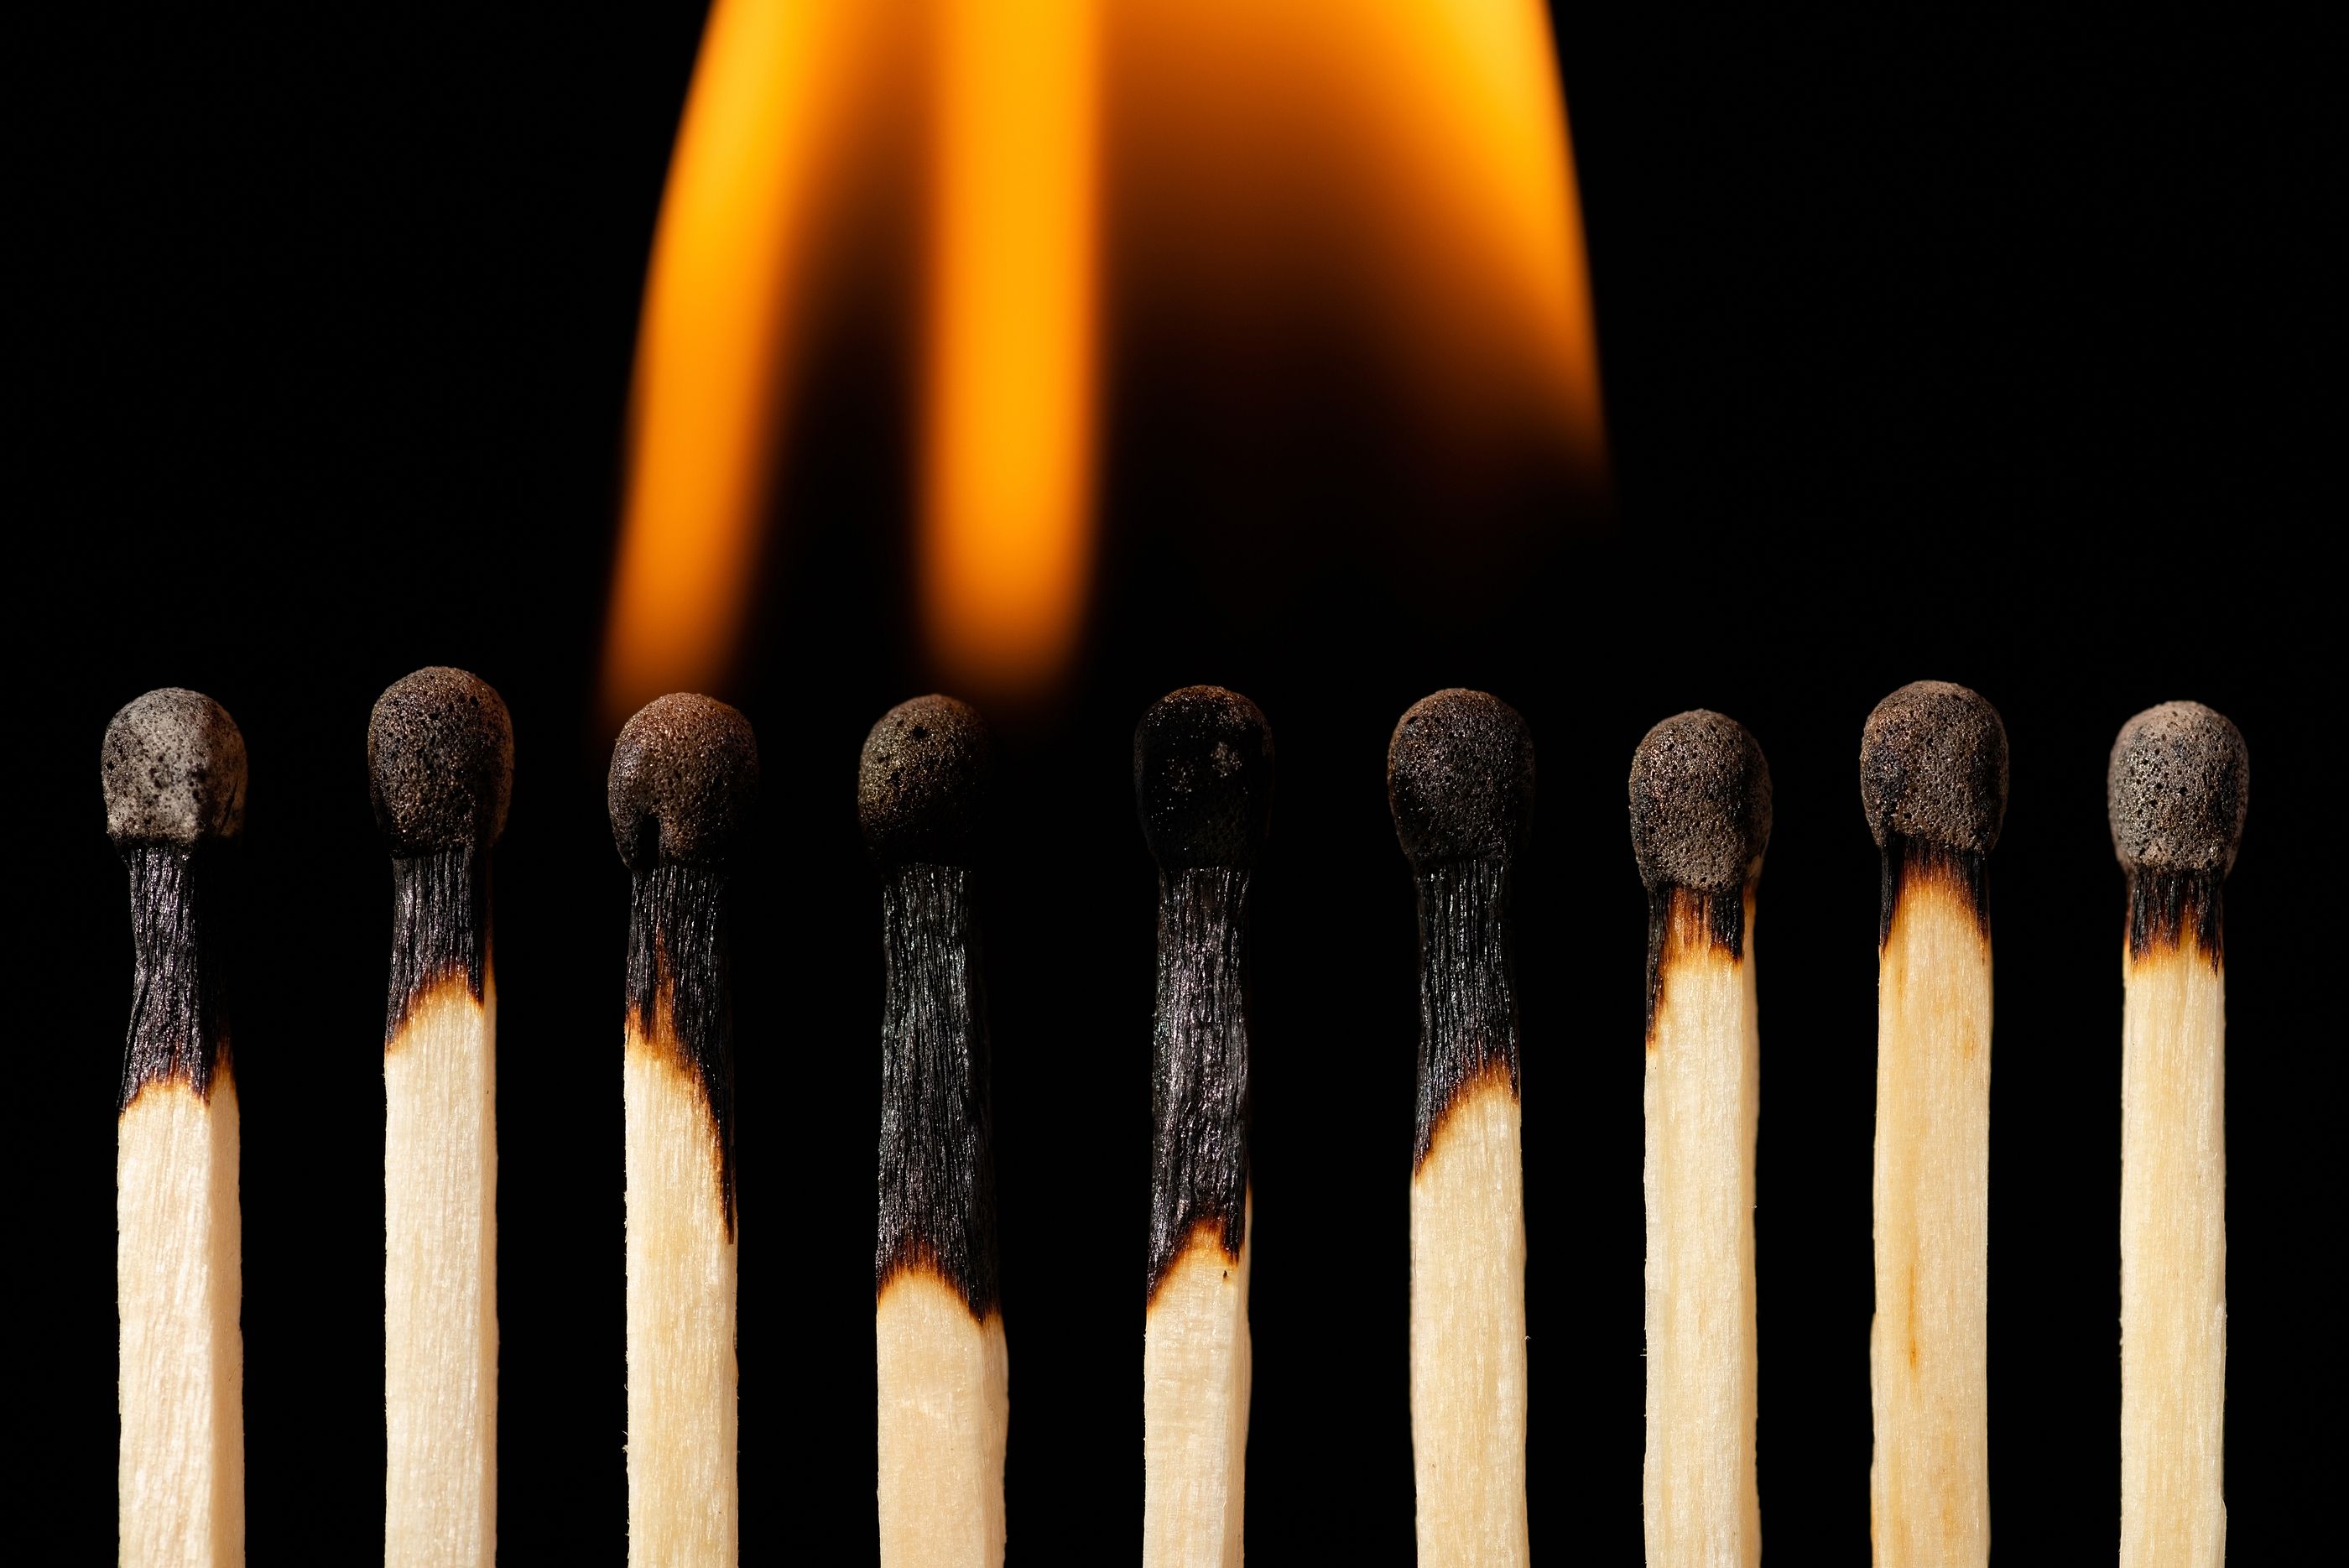 Los perfeccionistas tienen más probabilidades de sufrir 'burnout', según un estudio